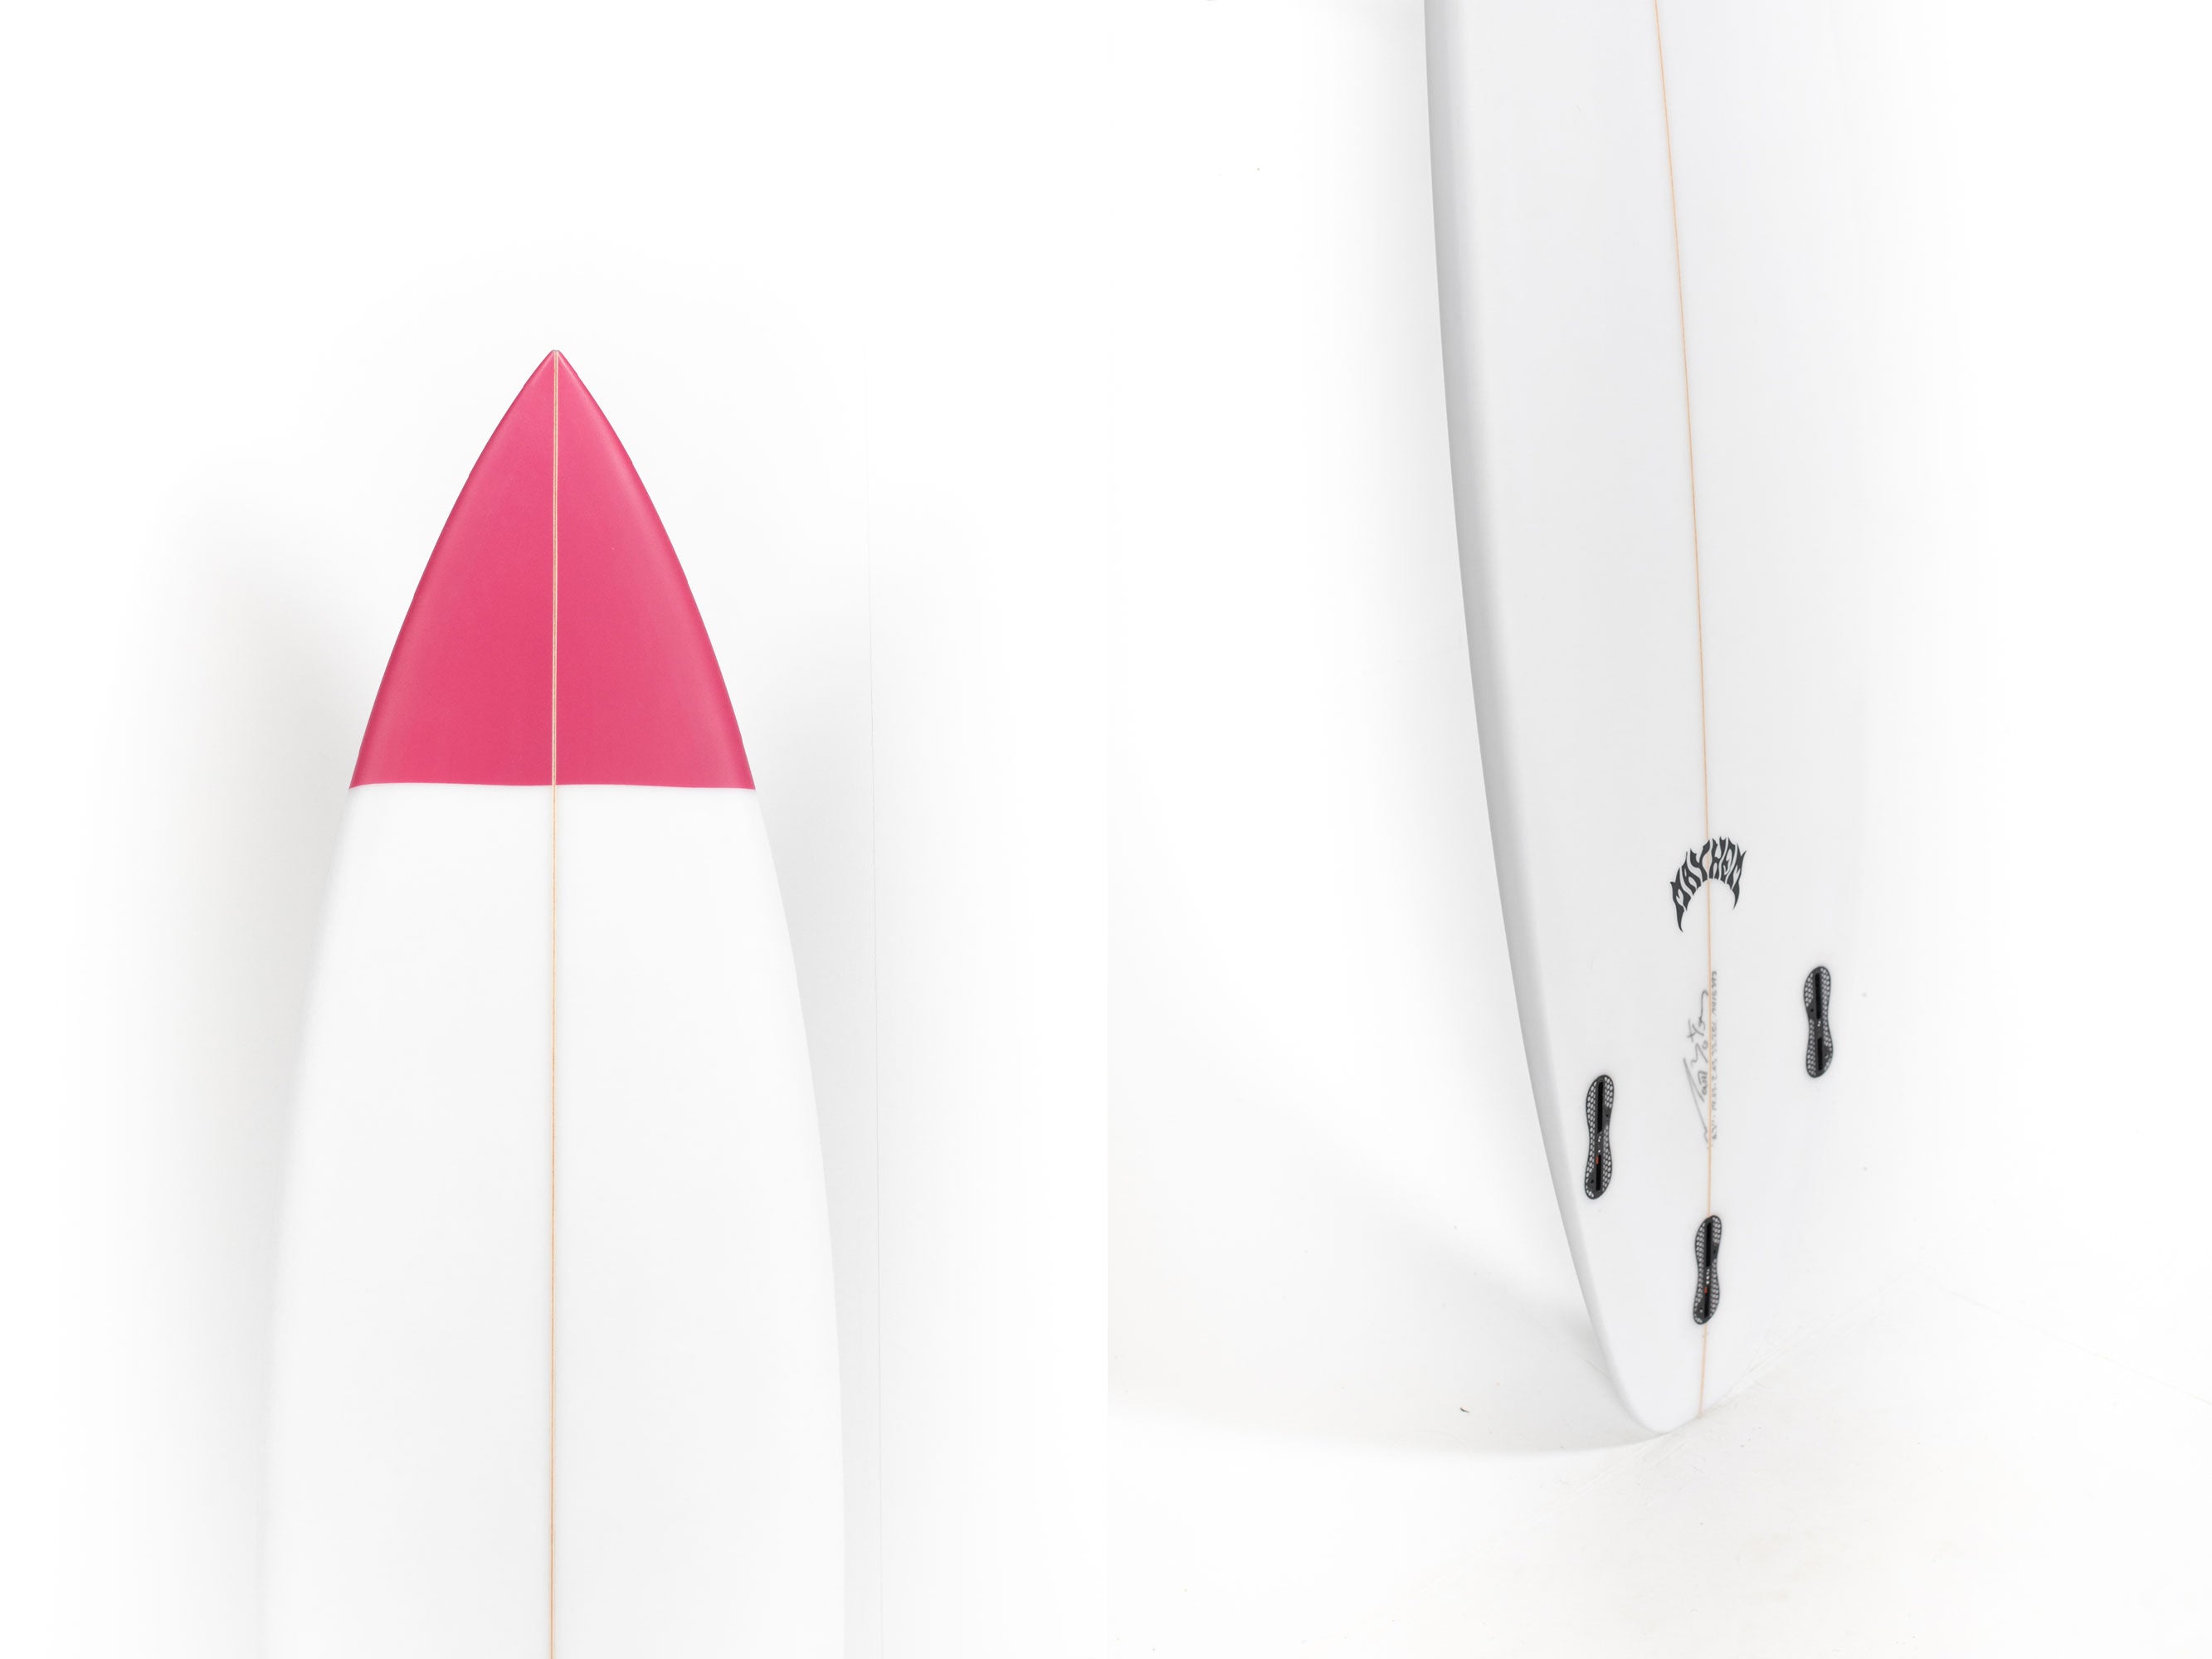 Lost Surfboards - DRIVER 3.0 by Matt Biolos - 6'3" x 19 5/8 x 2 5/8 x 33,25L - MH15393